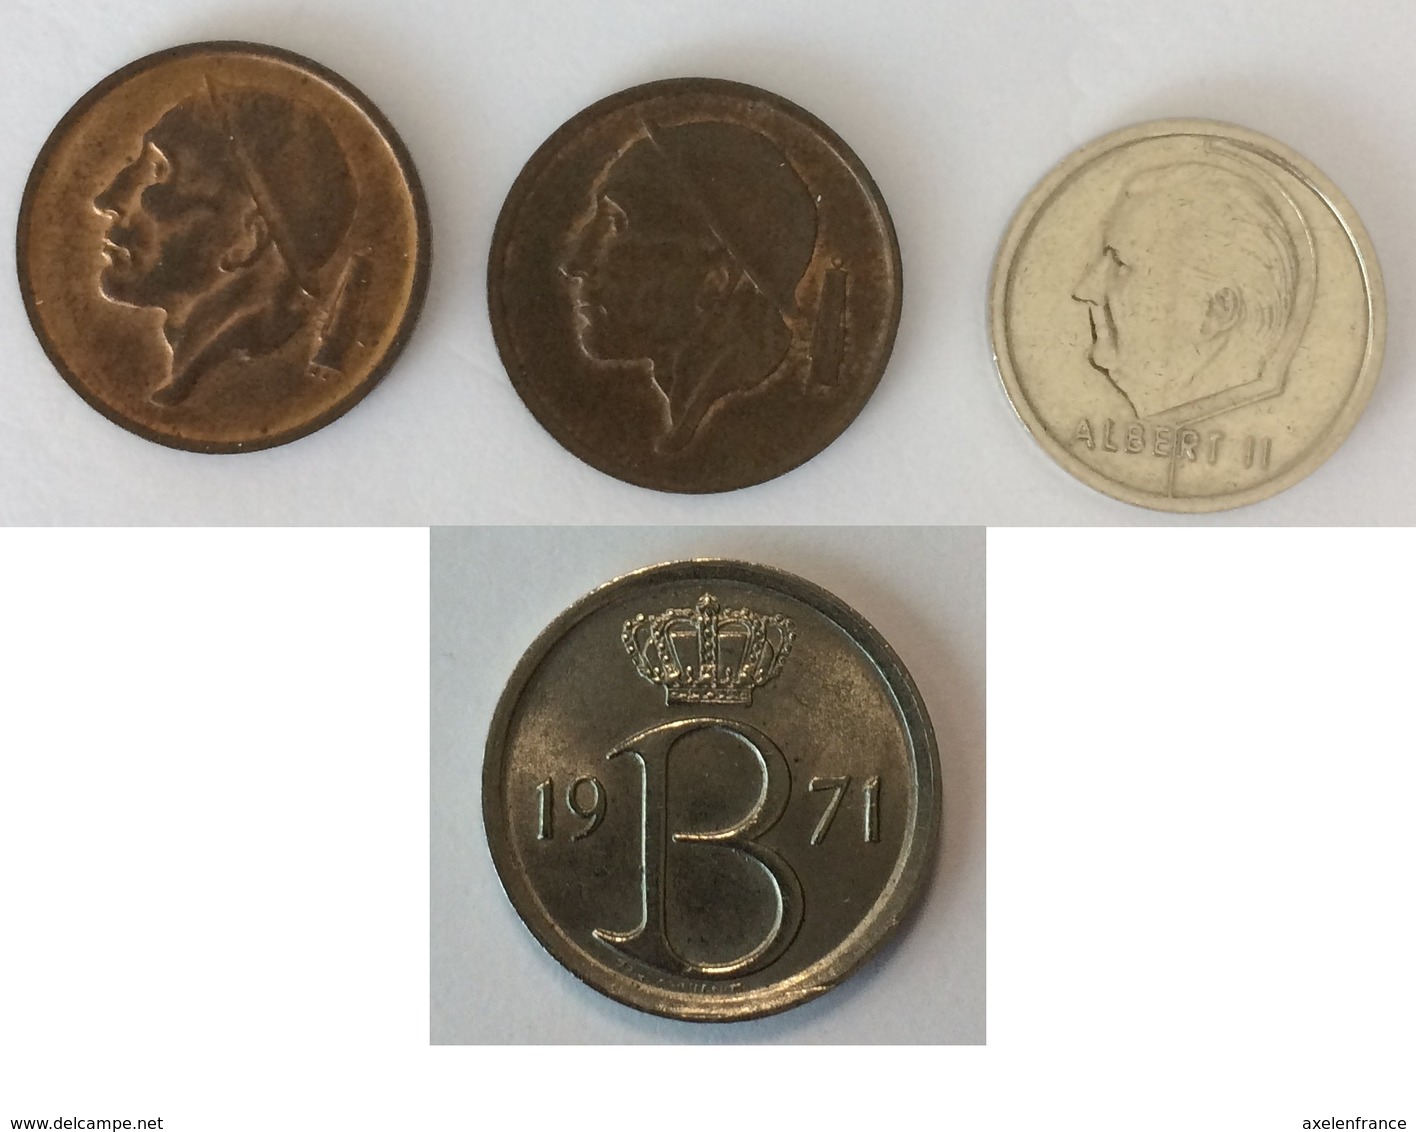 Belgique 1 Franc 1994 - Belgique 50 Centimes 1959 - Belgie 50 Centimes 1964 - Belgique 25 Centimes 1971 - Unclassified